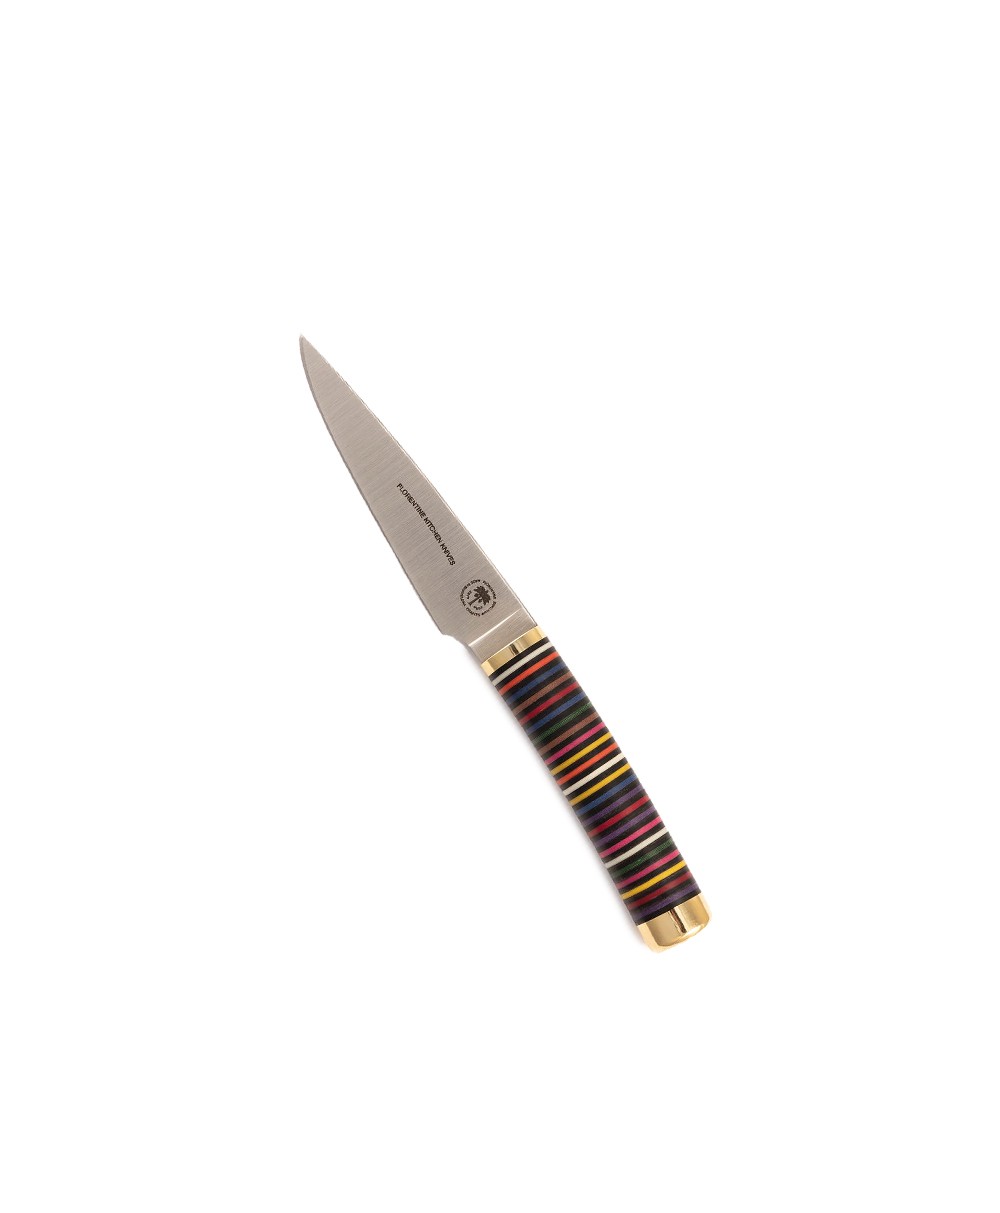 Produktbild des Florentine Paring Knife in mixed colors von Florentine Kitchen Knives im RAUM concept store 